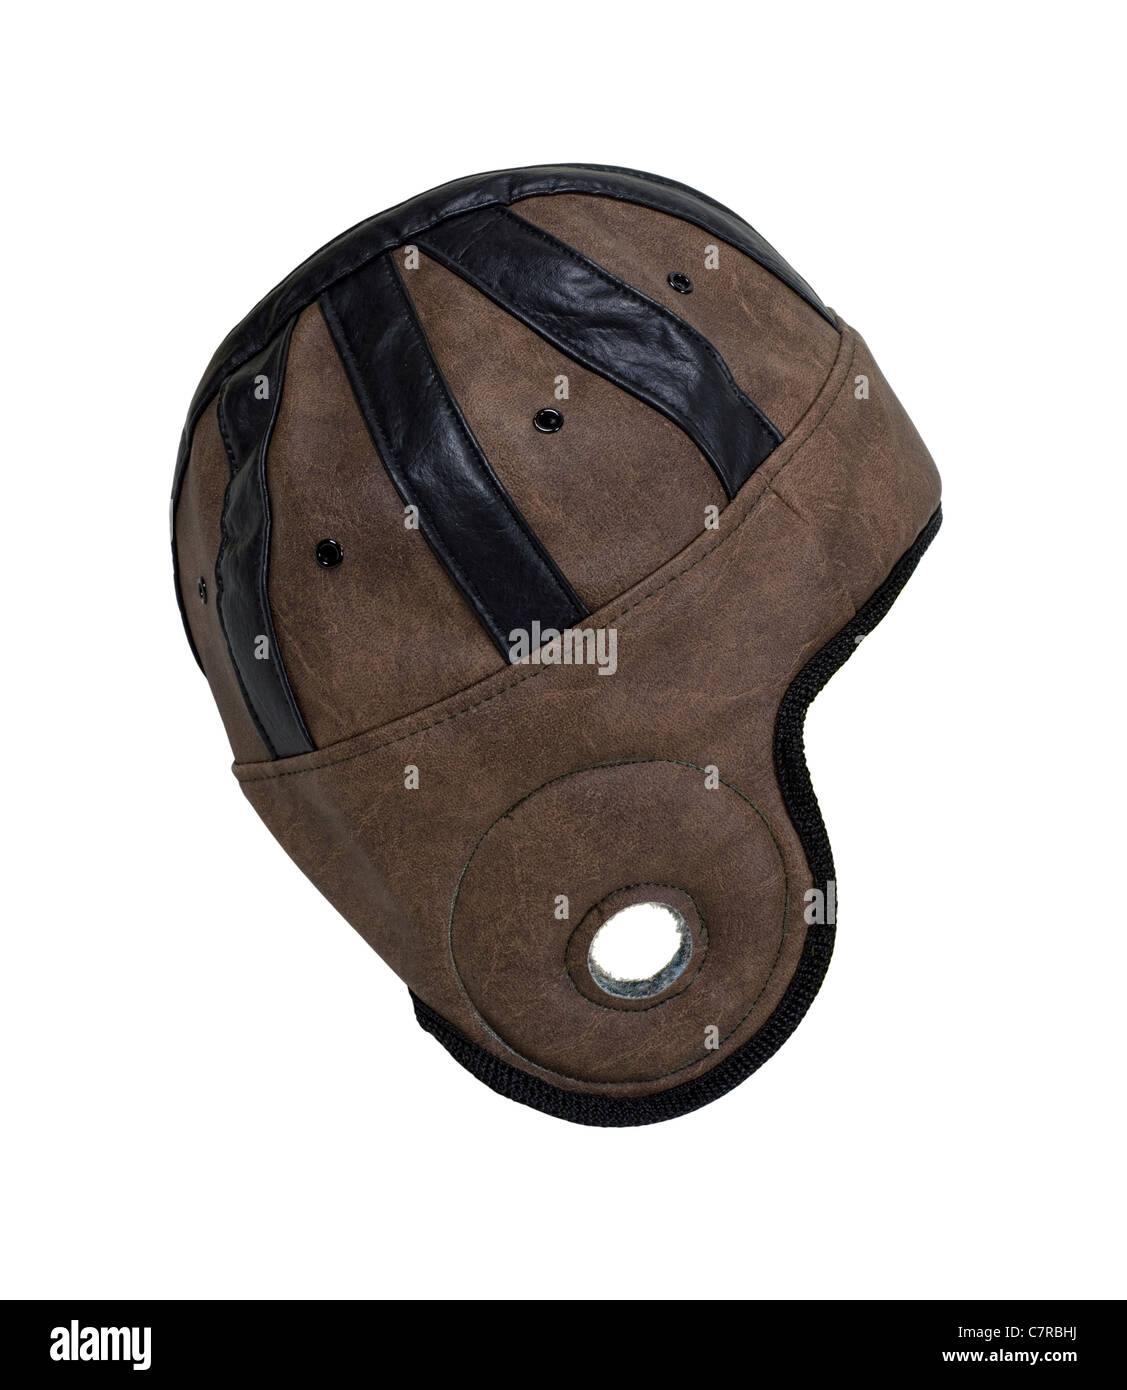 Retro style casque utilisé pour la protection de la tête pendant le sport - parcours inclus Banque D'Images